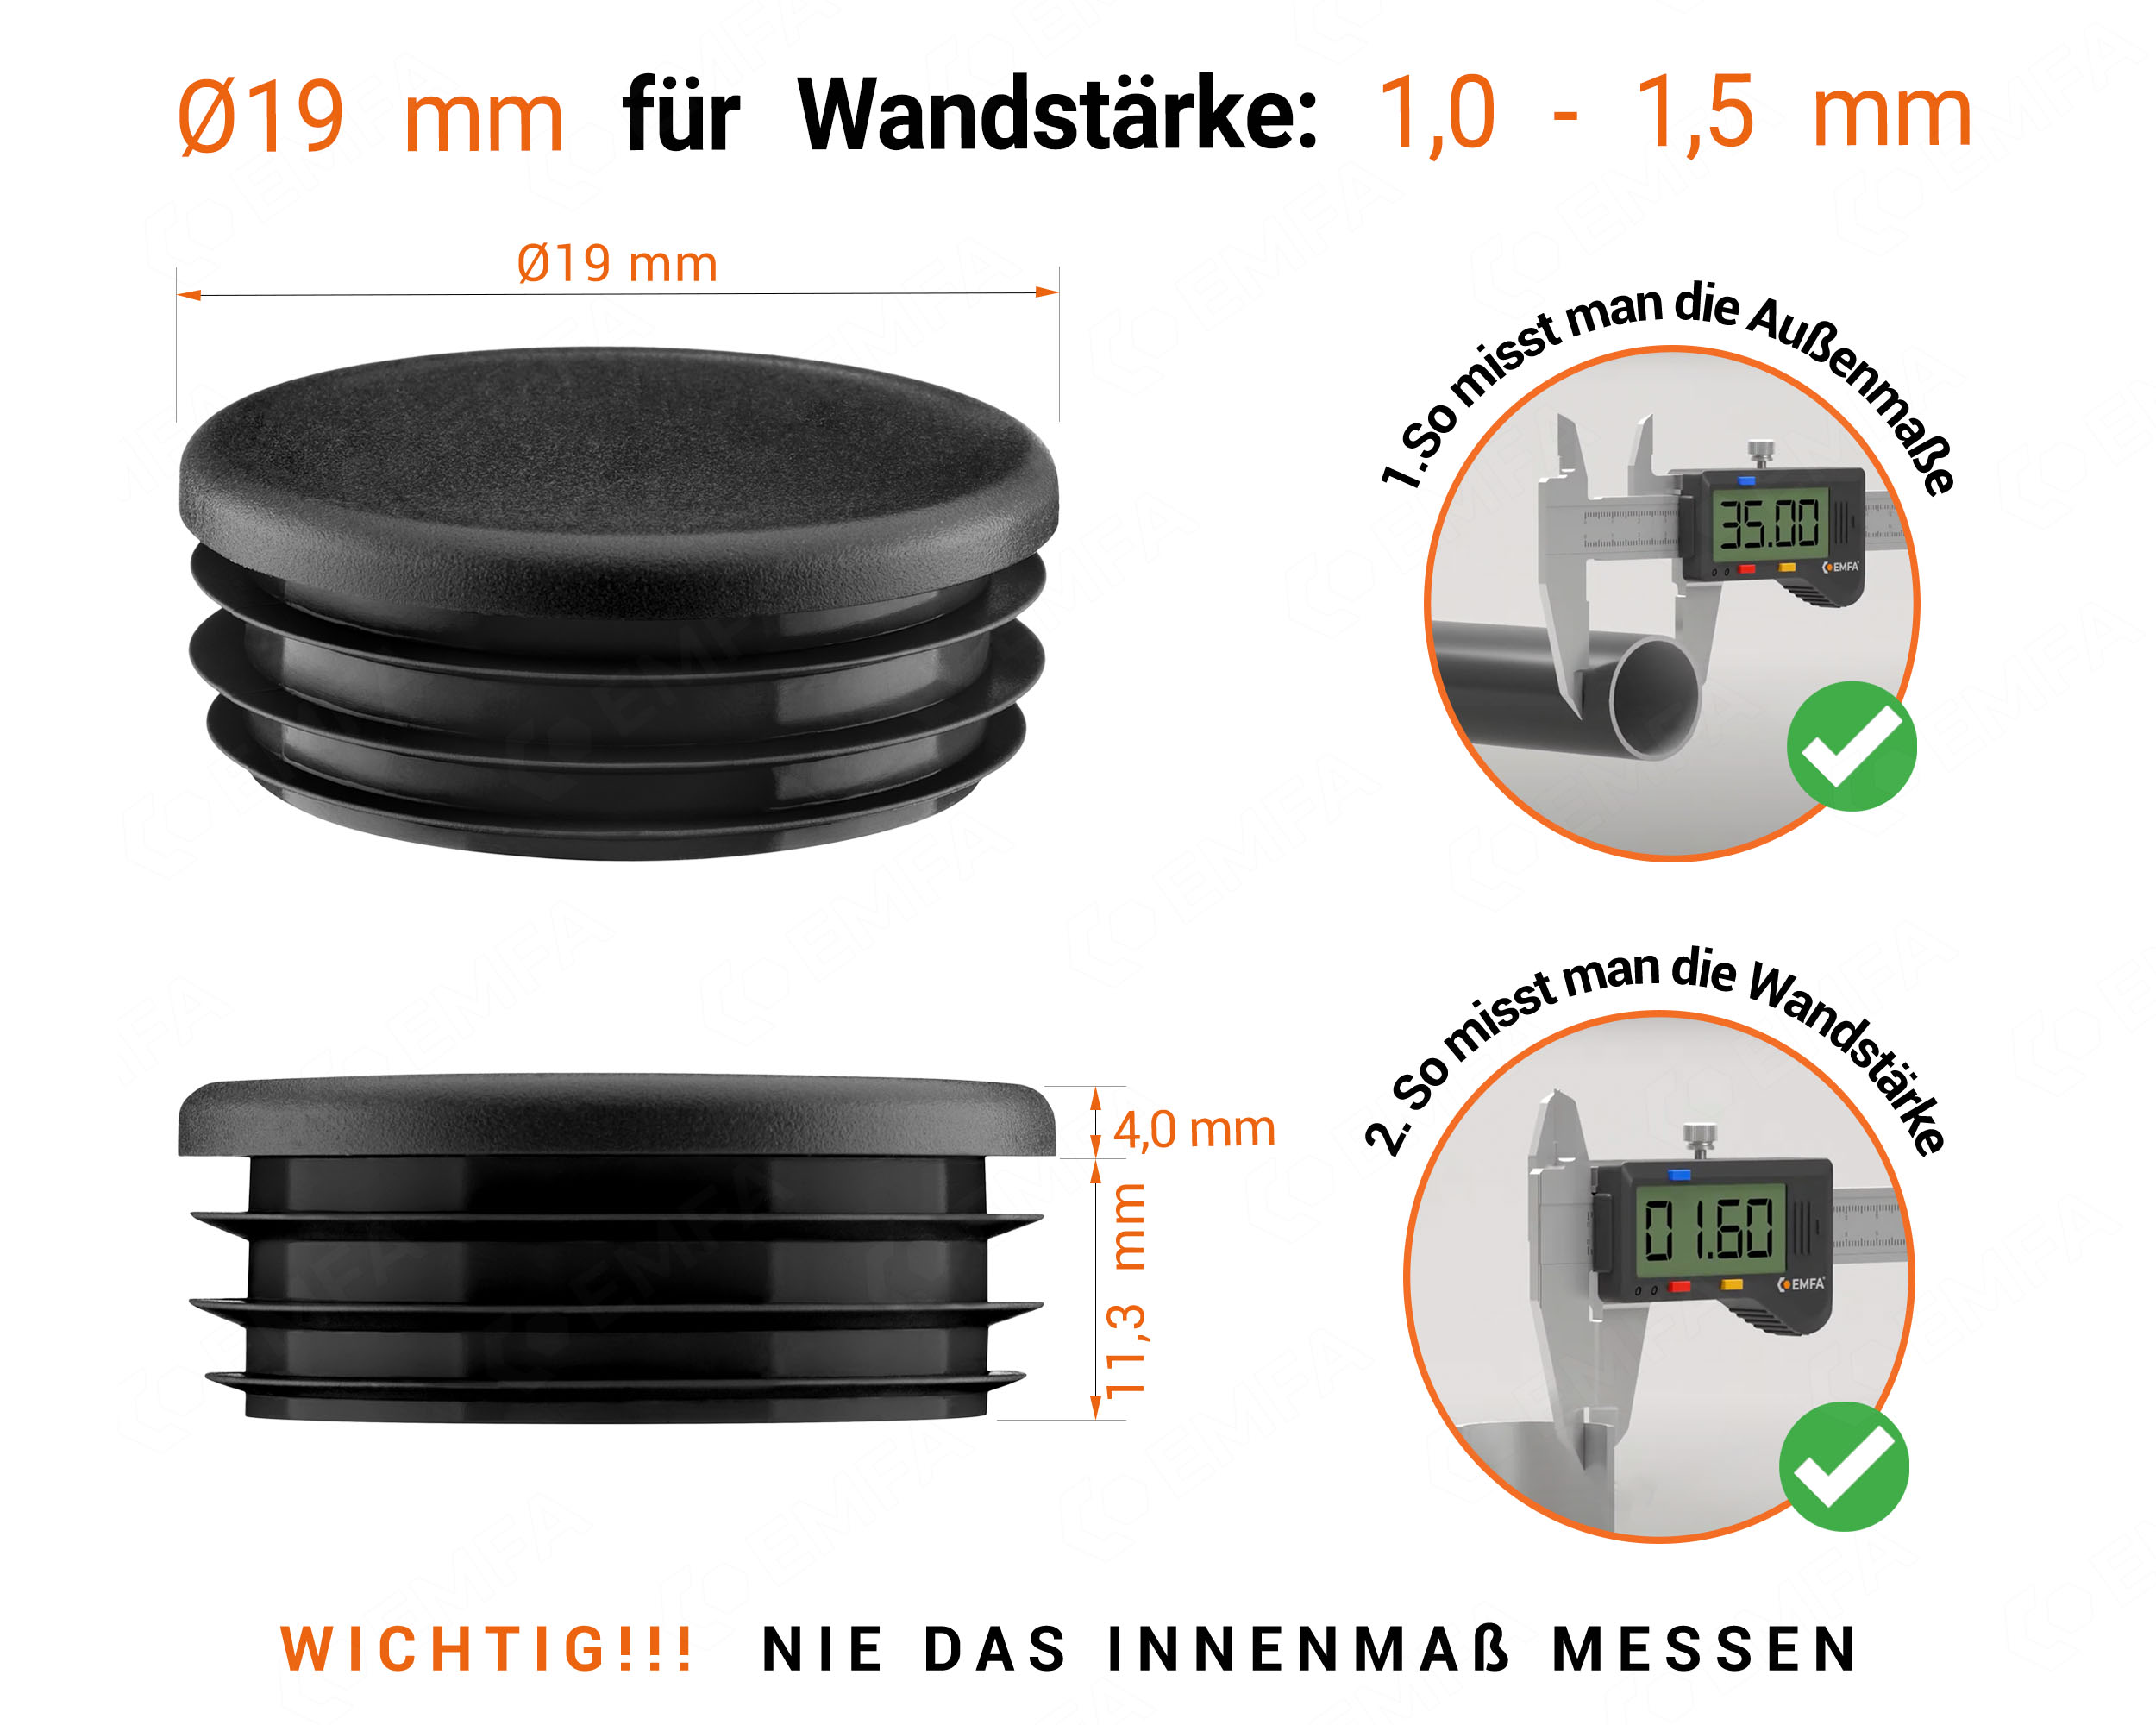 Schwarze Endkappe für Rundrohre in der Größe 19 mm mit technischen Abmessungen und Anleitung für korrekte Messung